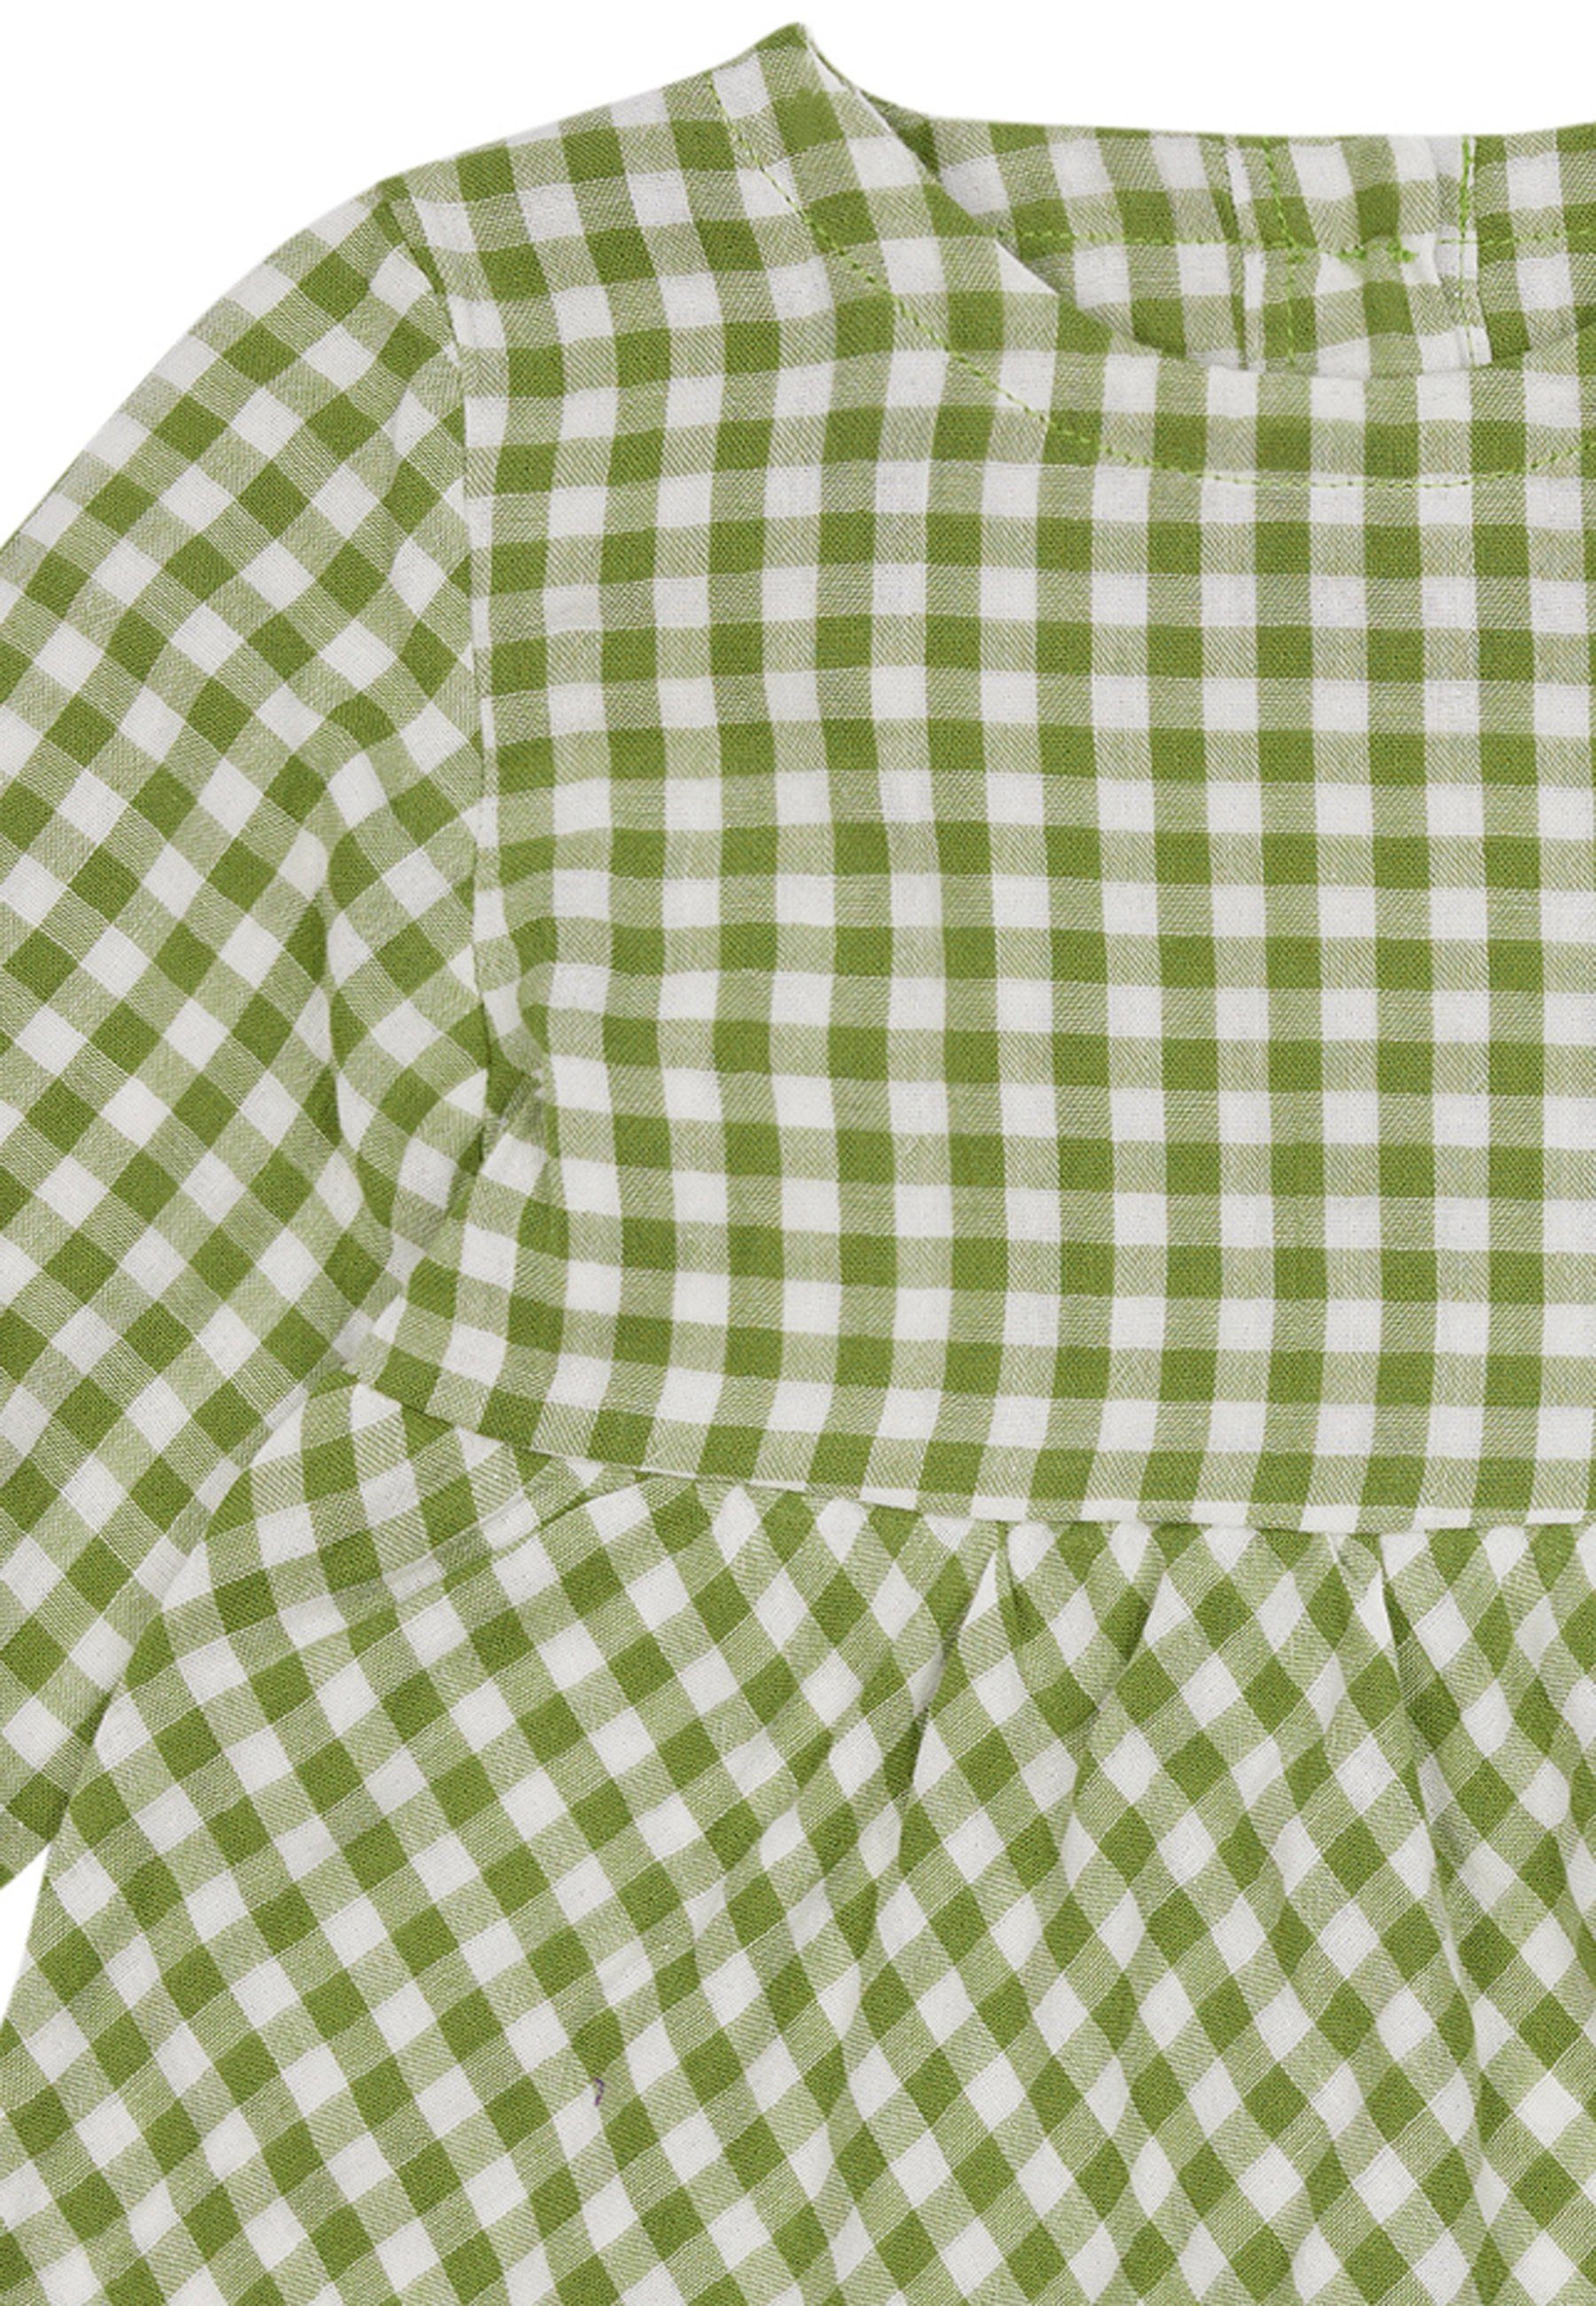 Kariertes + GOTS Musselin grün loud Bio-Baumwolle proud zertifizierte A-Linien-Kleid